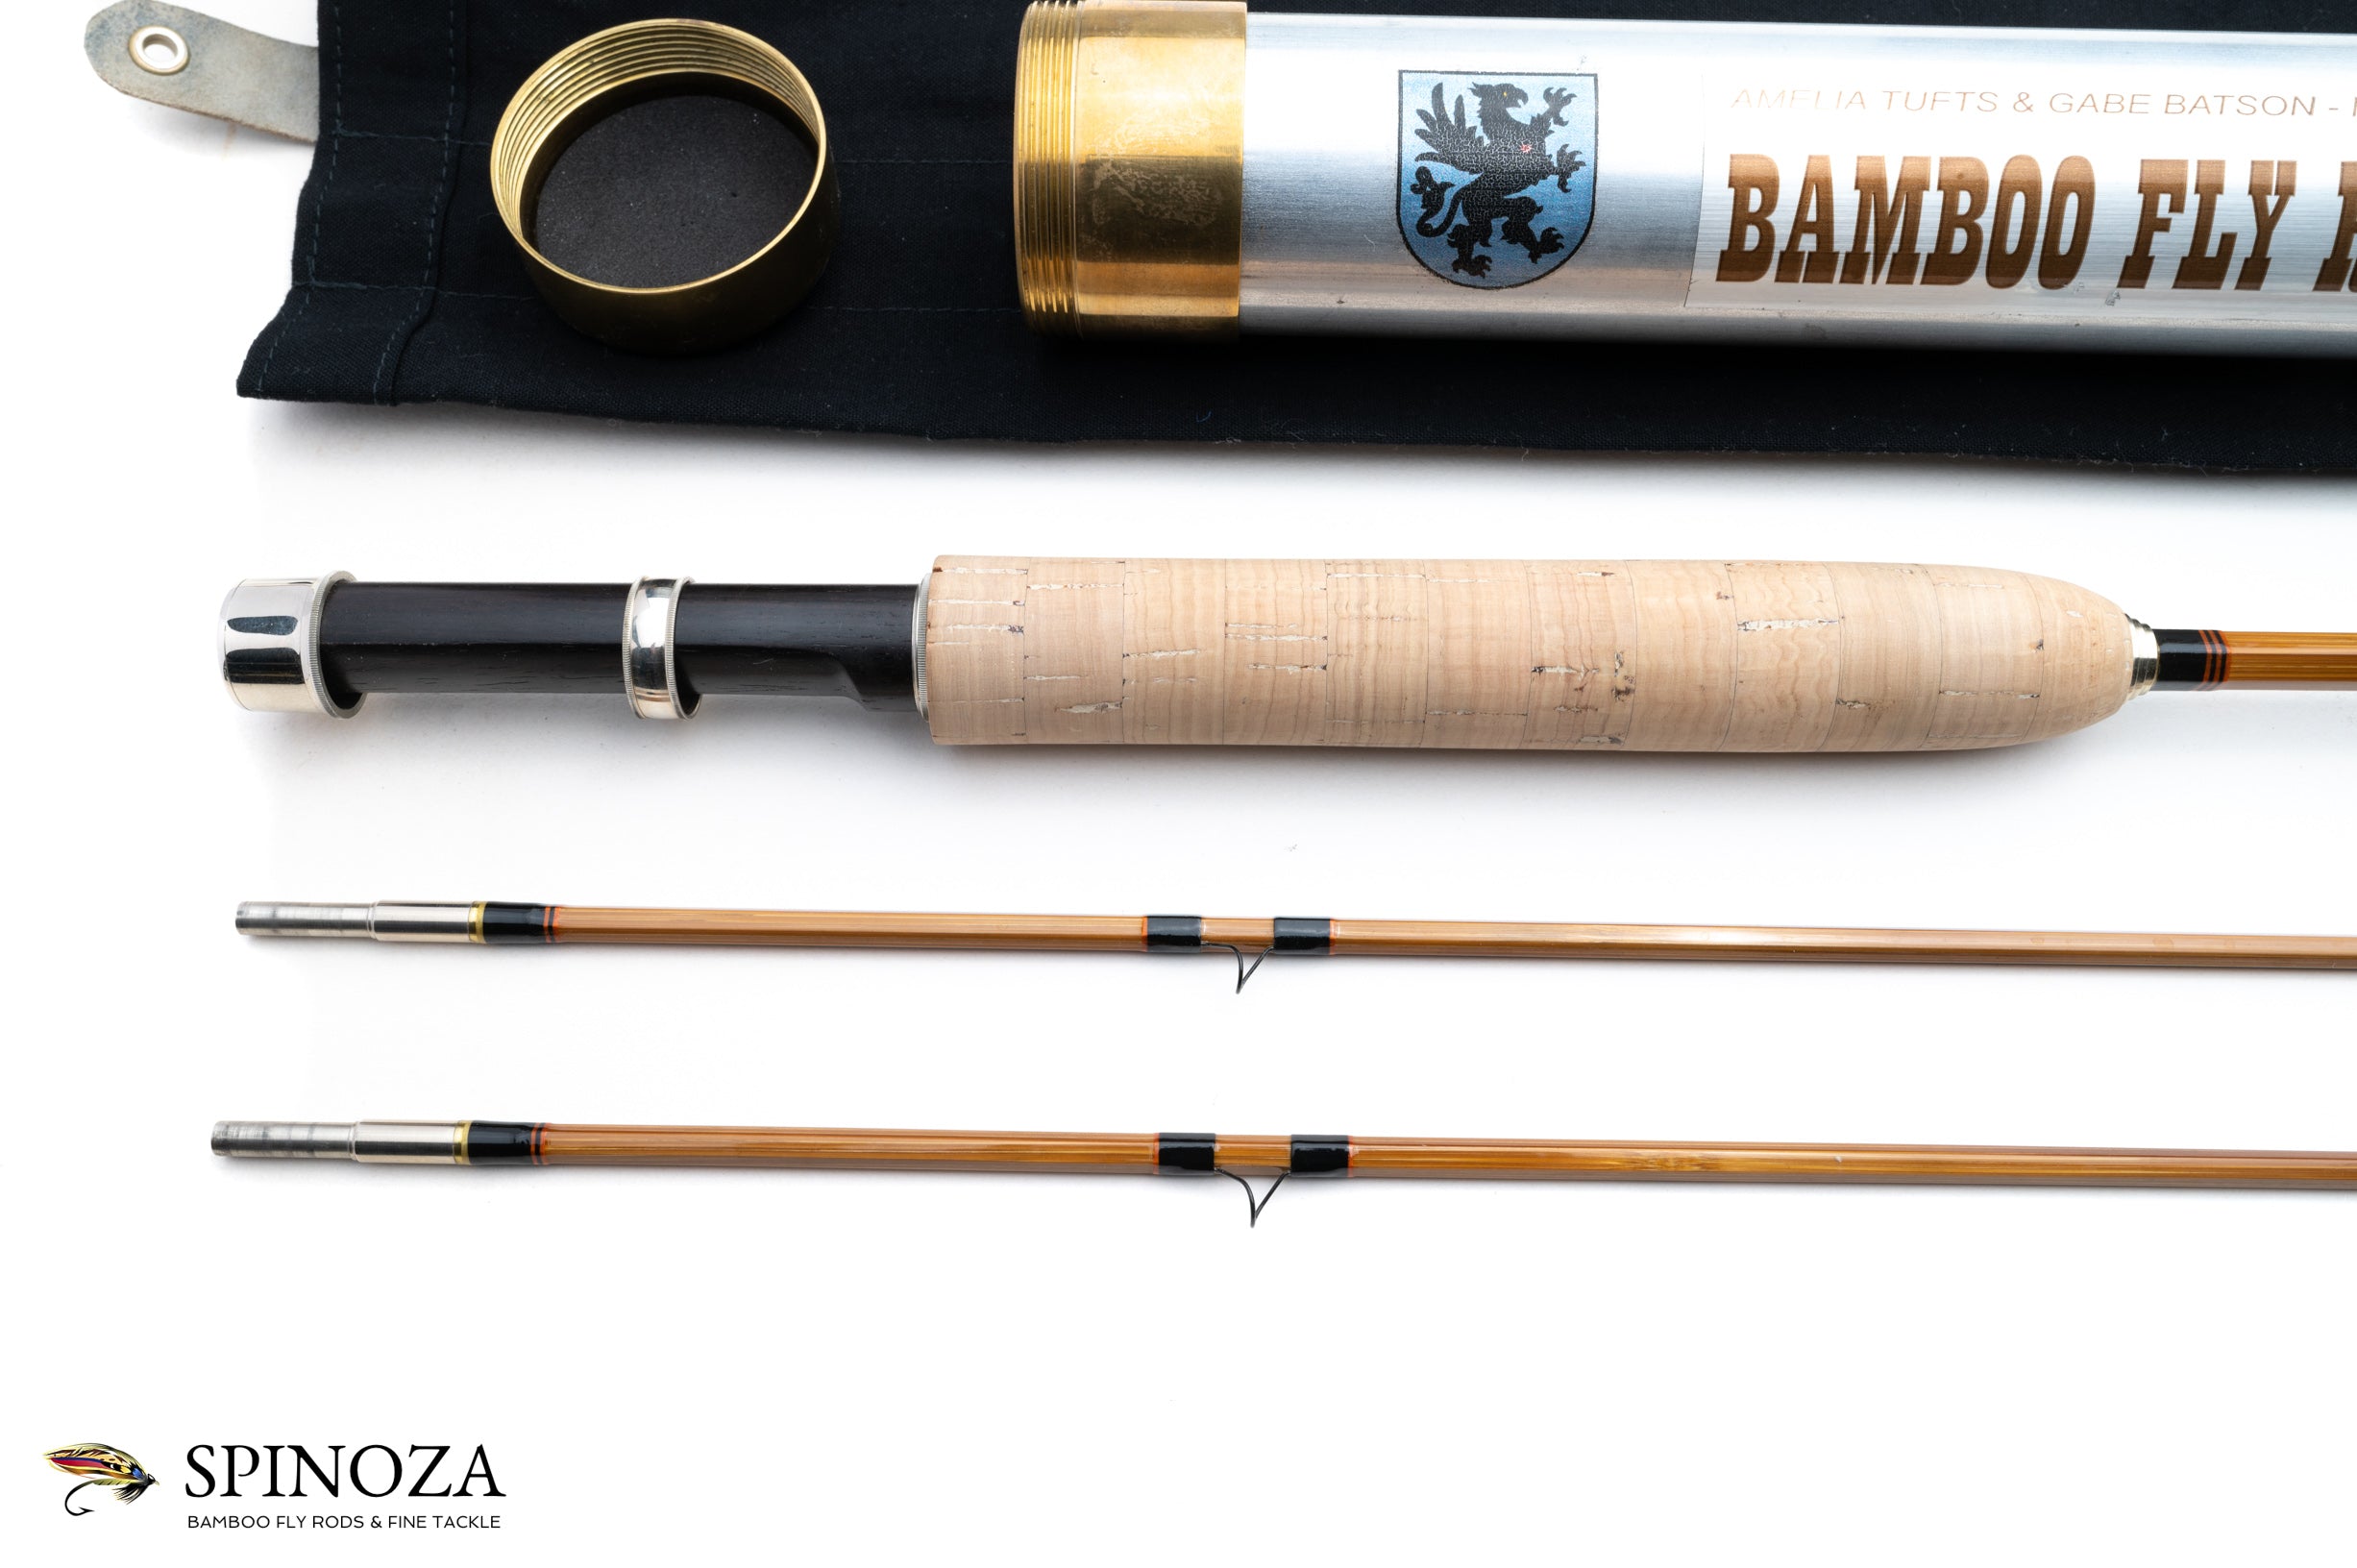 Tufts and Batson Bamboo Fly Rod 7' 2/2 #4 - Spinoza Rod Company